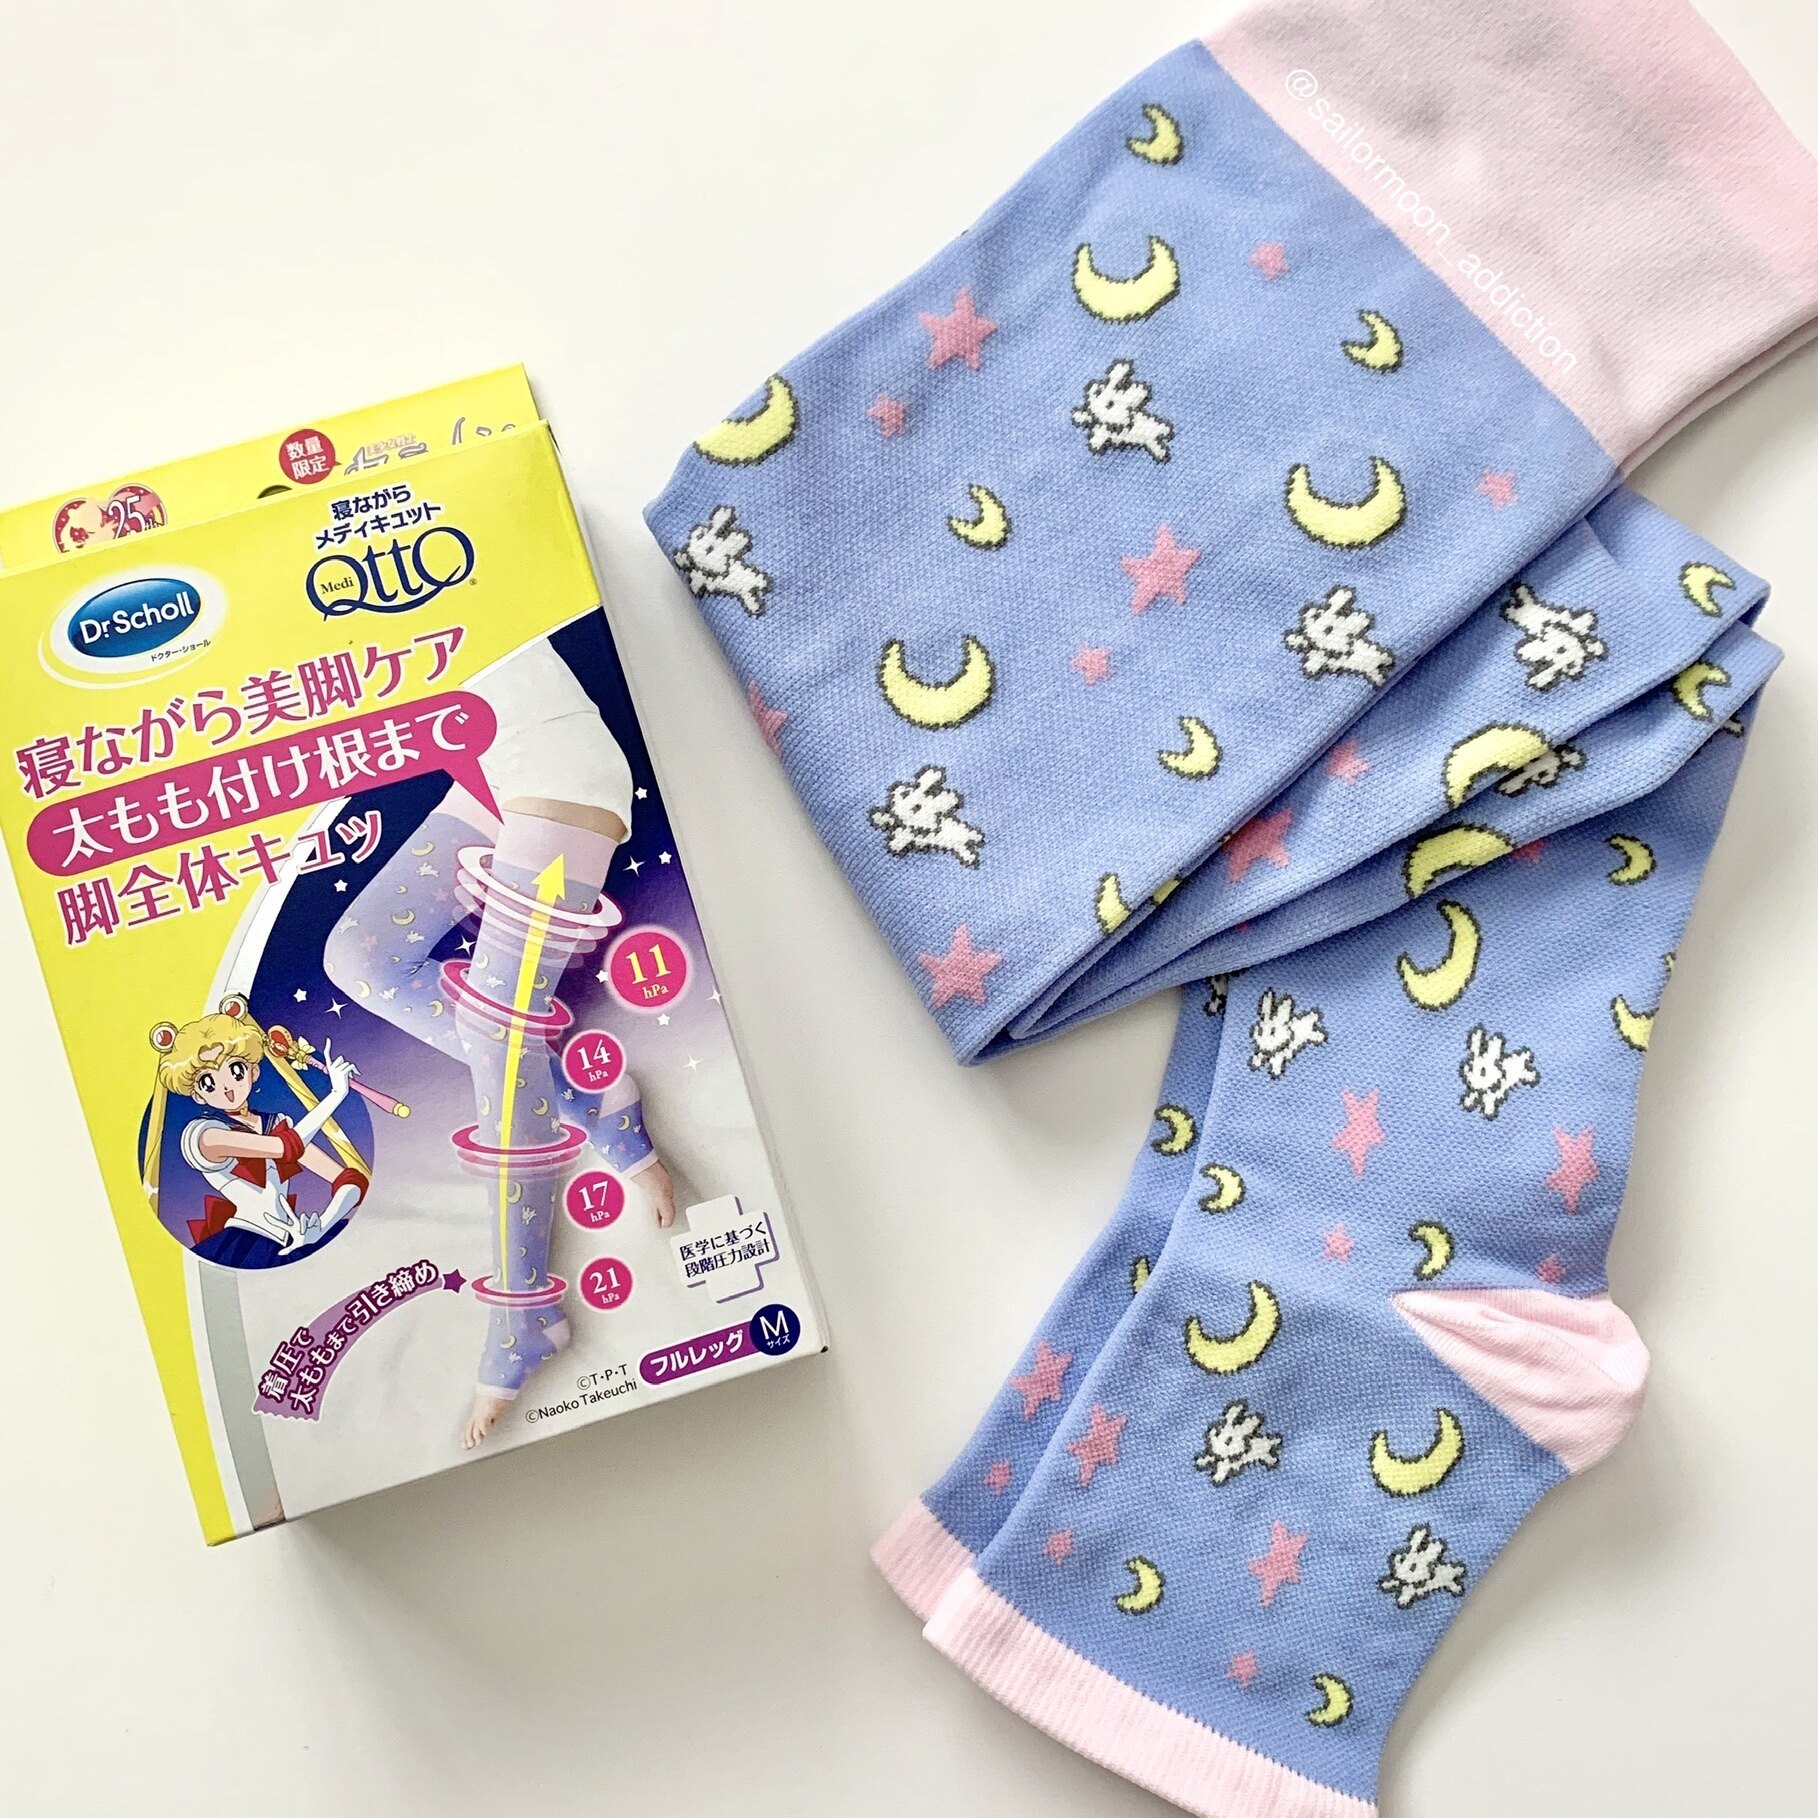 壓力襪推薦.Dr.Scholl 爽健 QTTO x Sailor Moon 美少女戰士 限定機能壓力襪